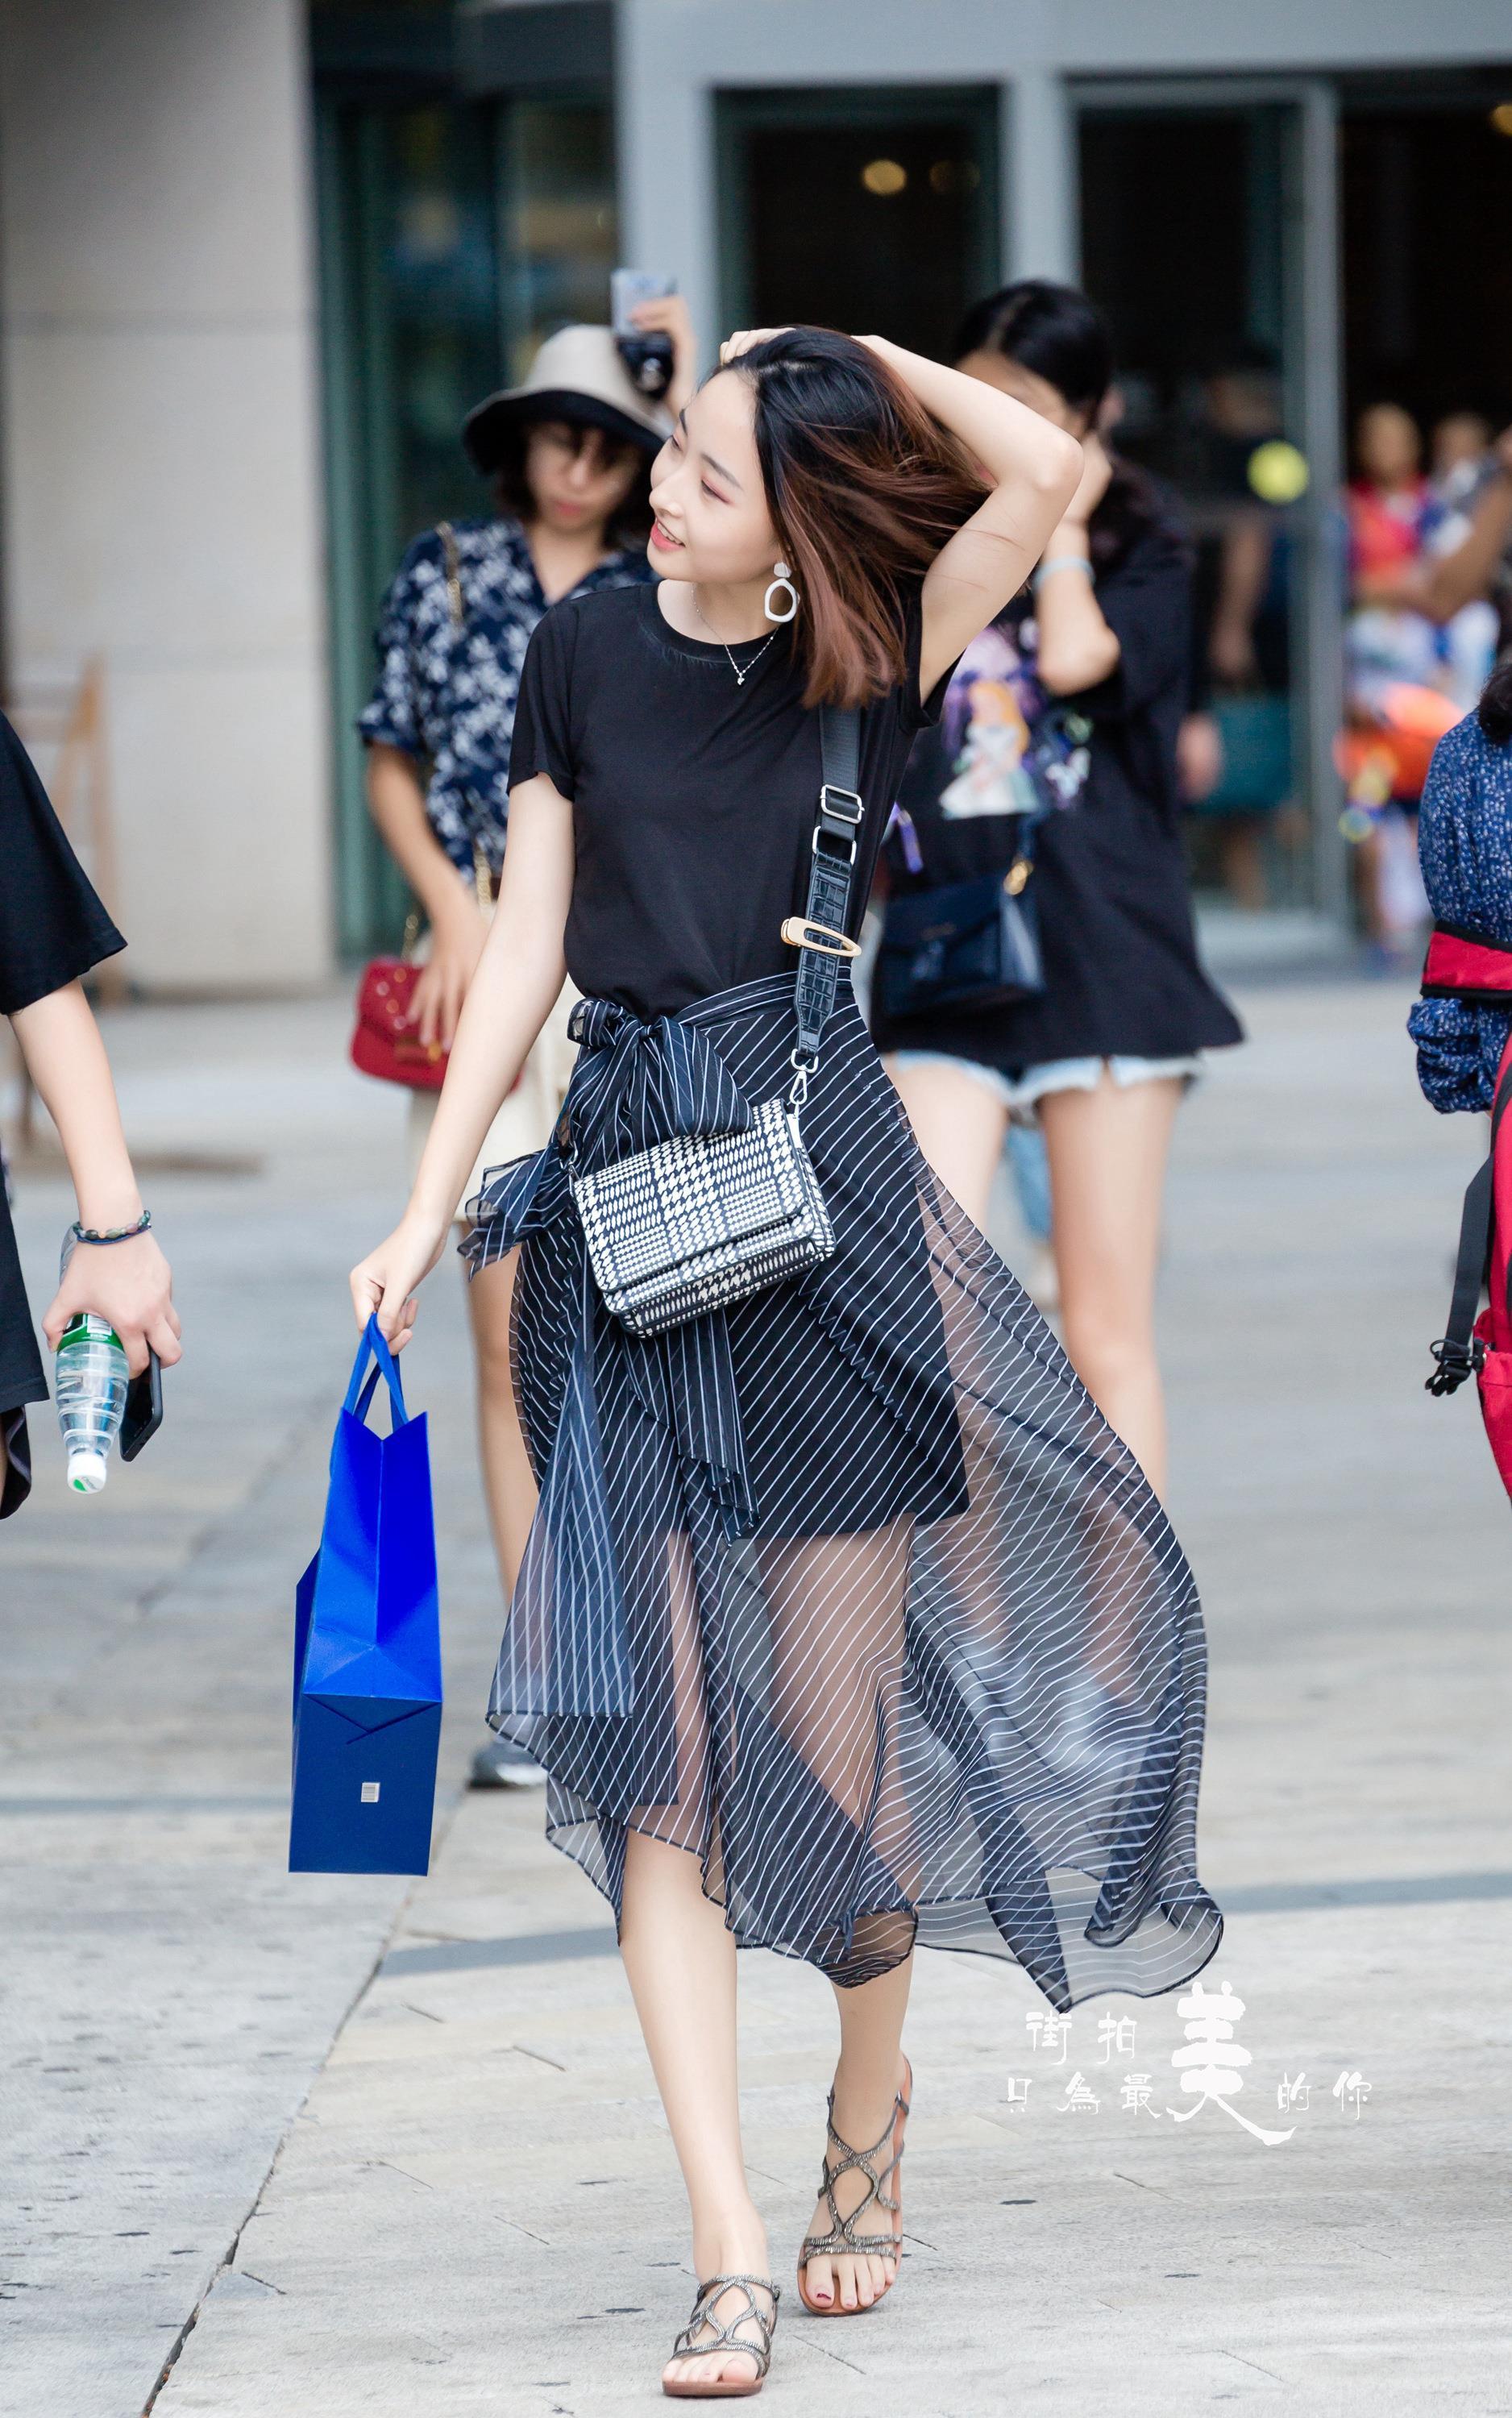 购物广场轻撩头发的气质美女 黑色短袖加黑色透视裙,